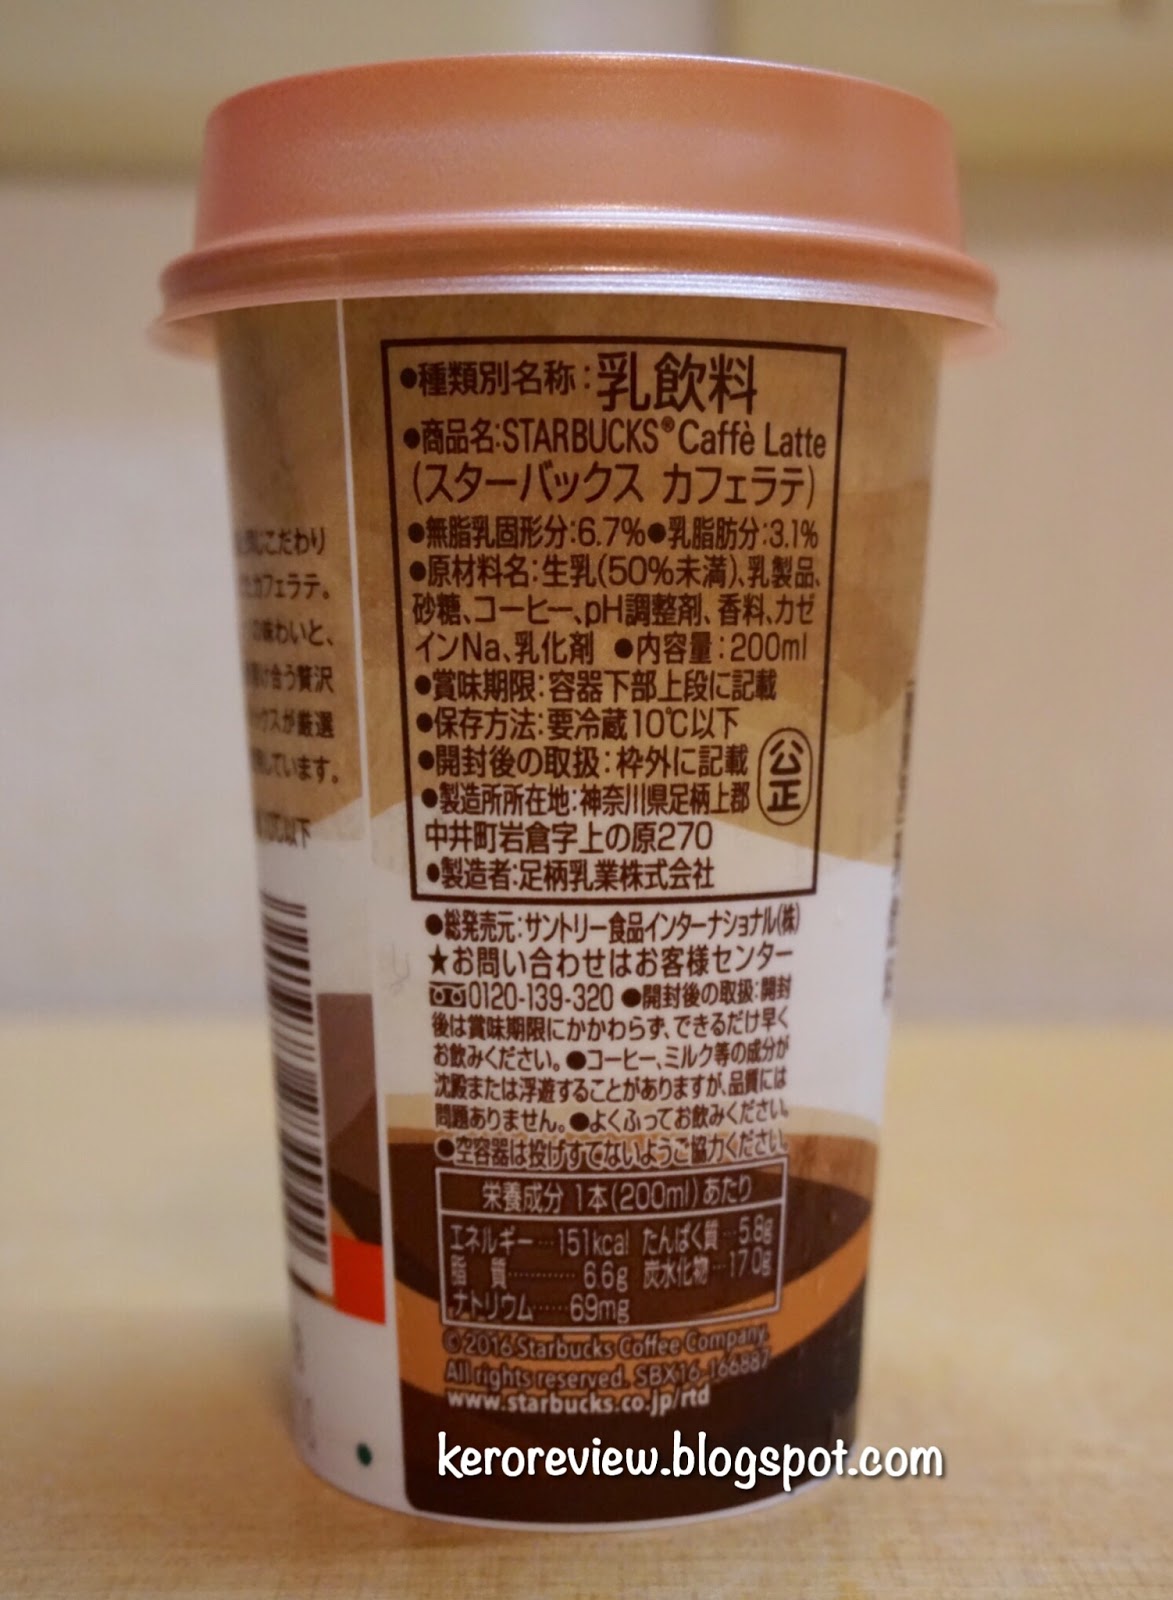 รีวิว สตาร์บัคส์คาเฟ่ กาแฟ ลาเต้ ญี่ปุ่น (CR) Review Japanese Caffe Latte, Starbucks Brand. STARBUCKS カフェラテ